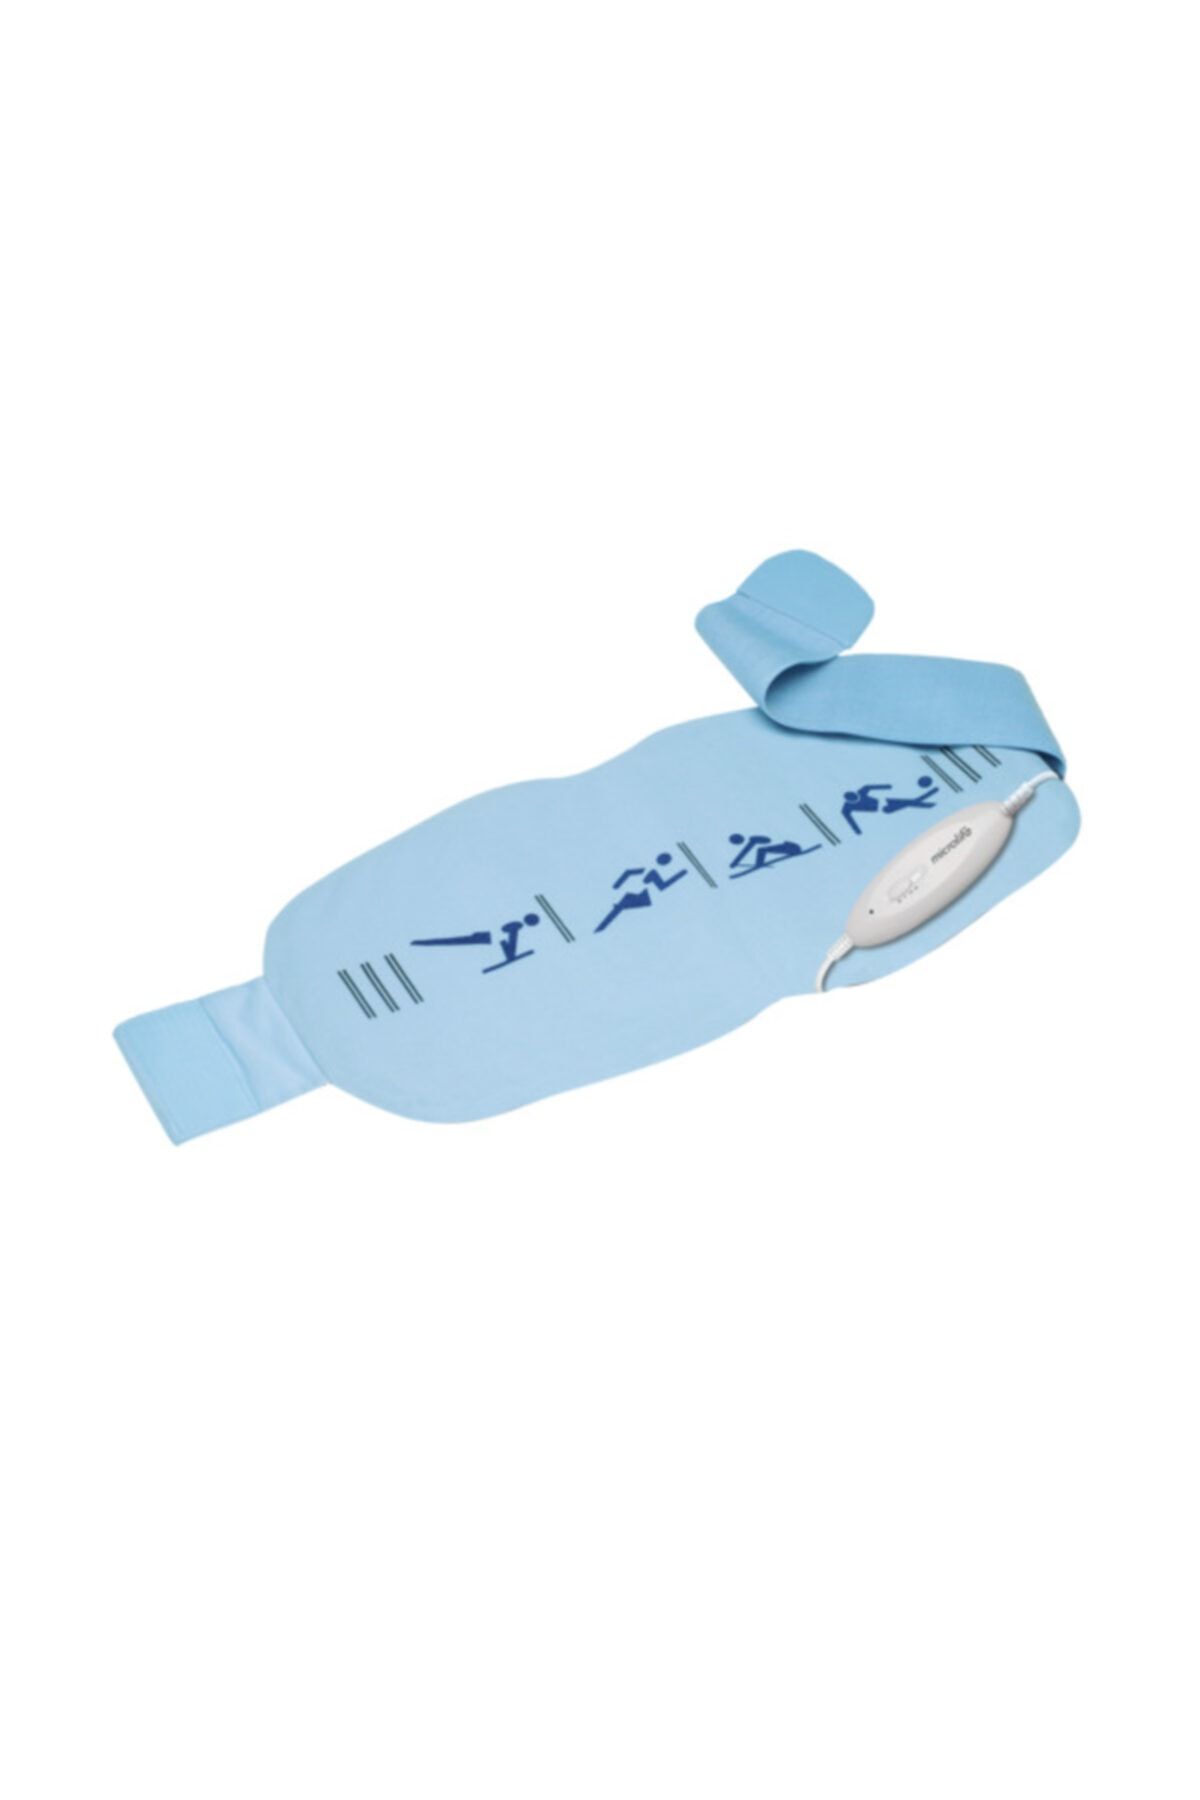 Microlife Fh 310 Isıtıcı Ped - Bel Boyun Karın Isıtıcı Kemer - Adet Kemeri - Isıtıcılı Fıtık Kemeri